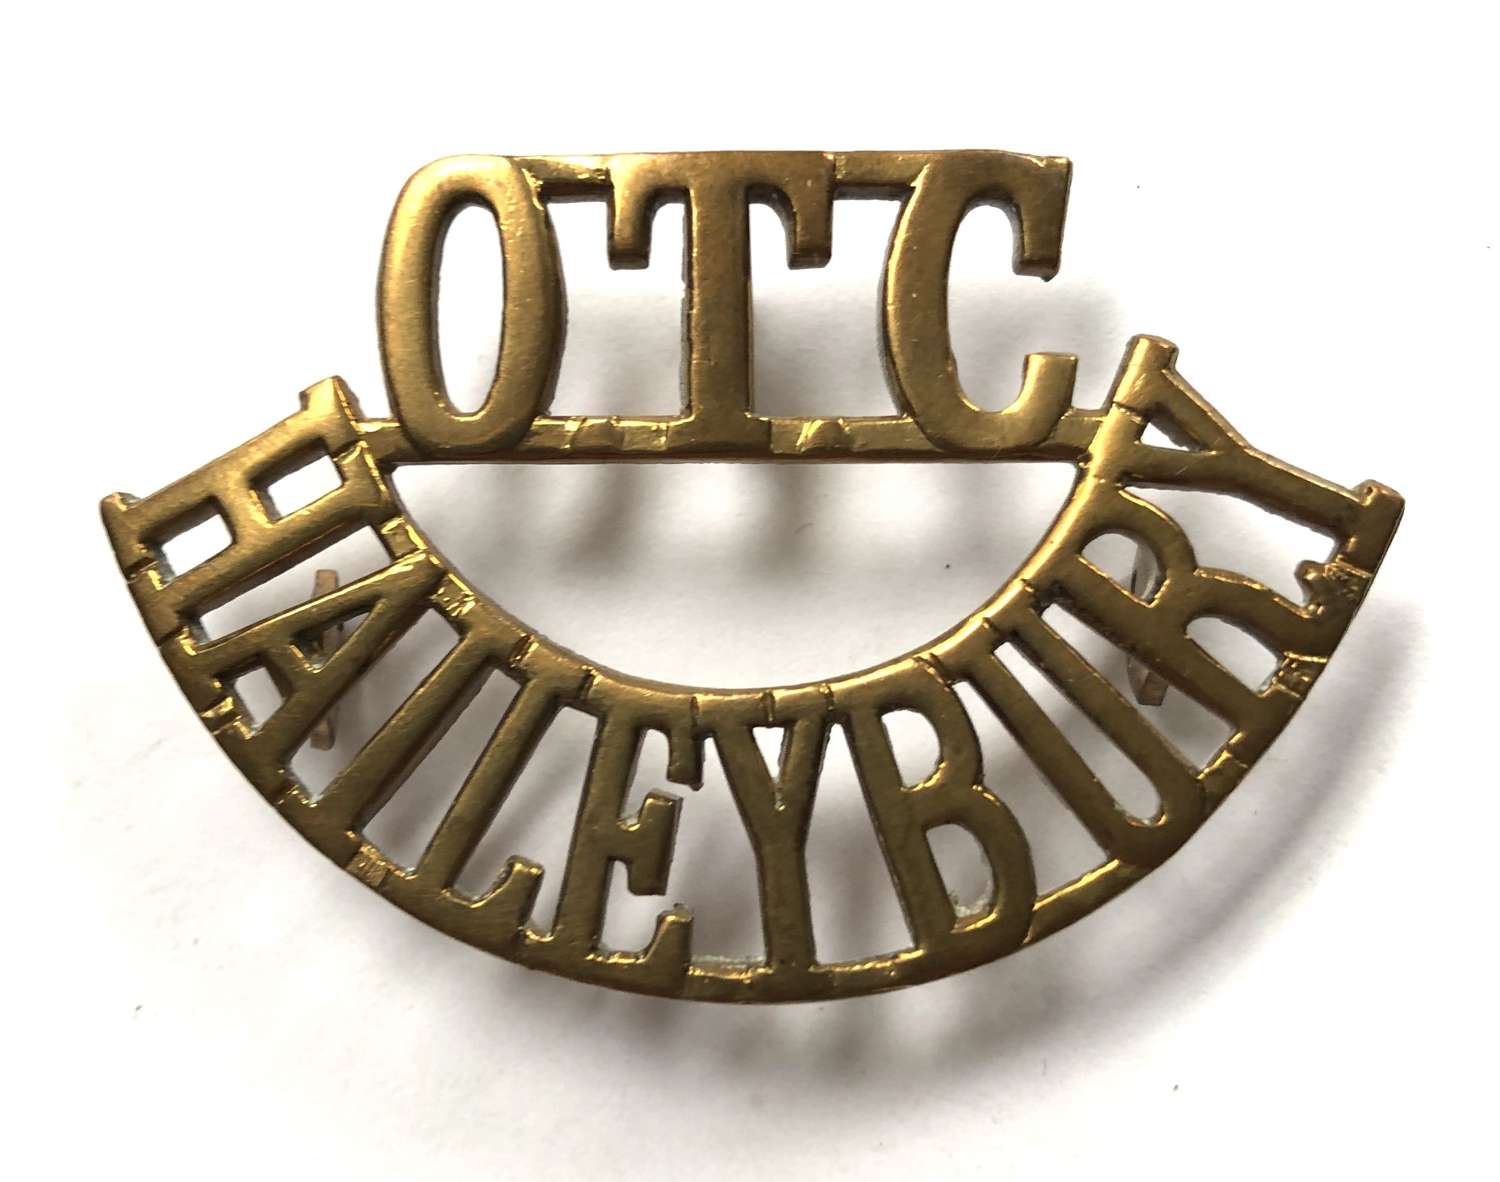 OTC / HAILEYBURY shoulder title c1908-40